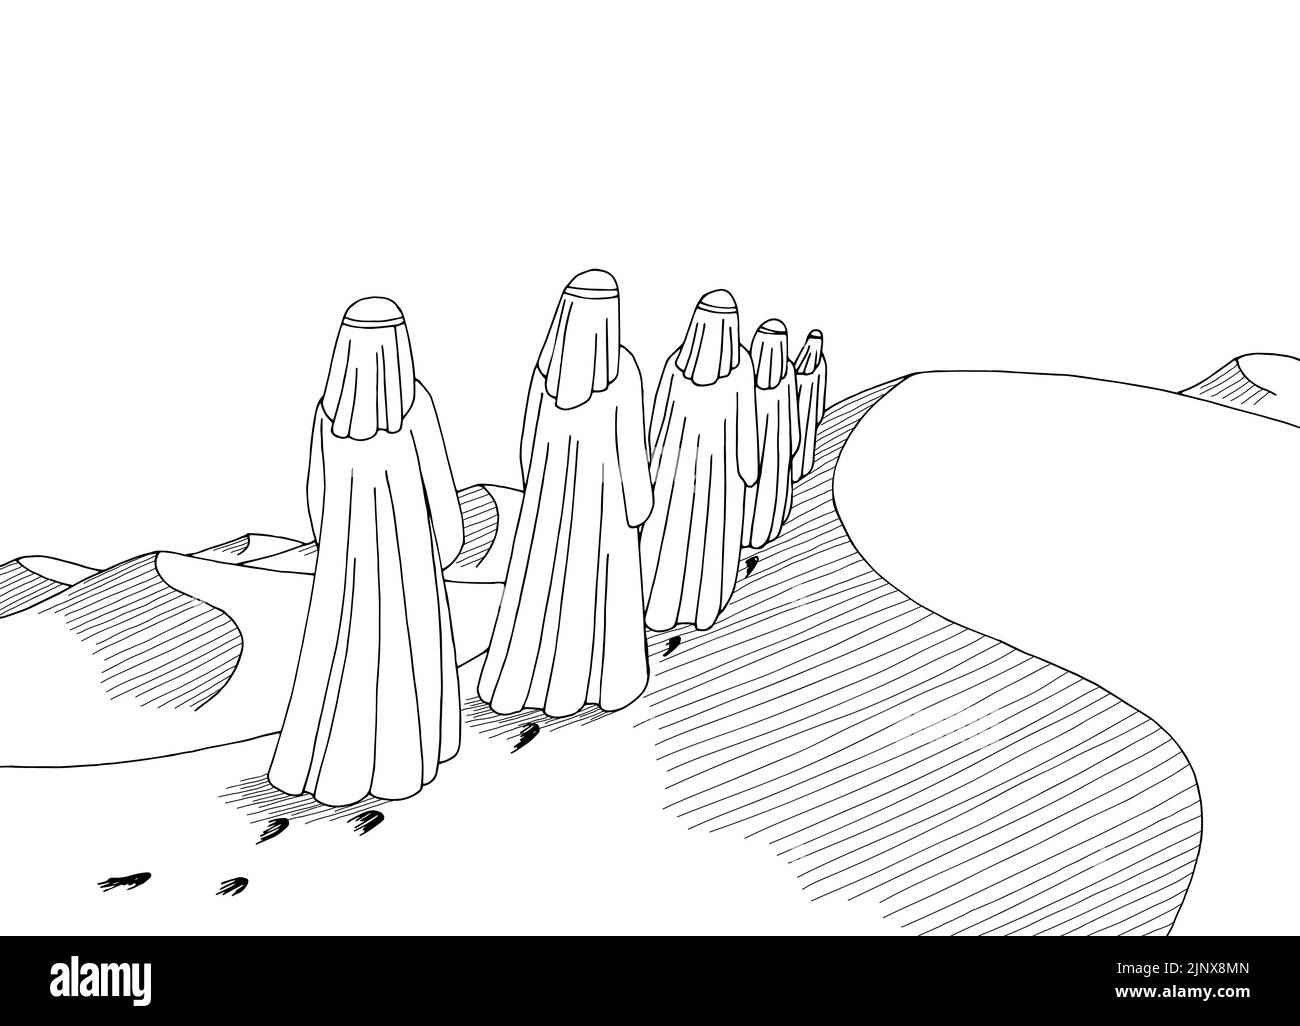 Menschen, die in der Wüste spazieren, zeichnen sich durch eine schwarz-weiße Landschaft, Skizzen und Illustrationen aus Stock Vektor